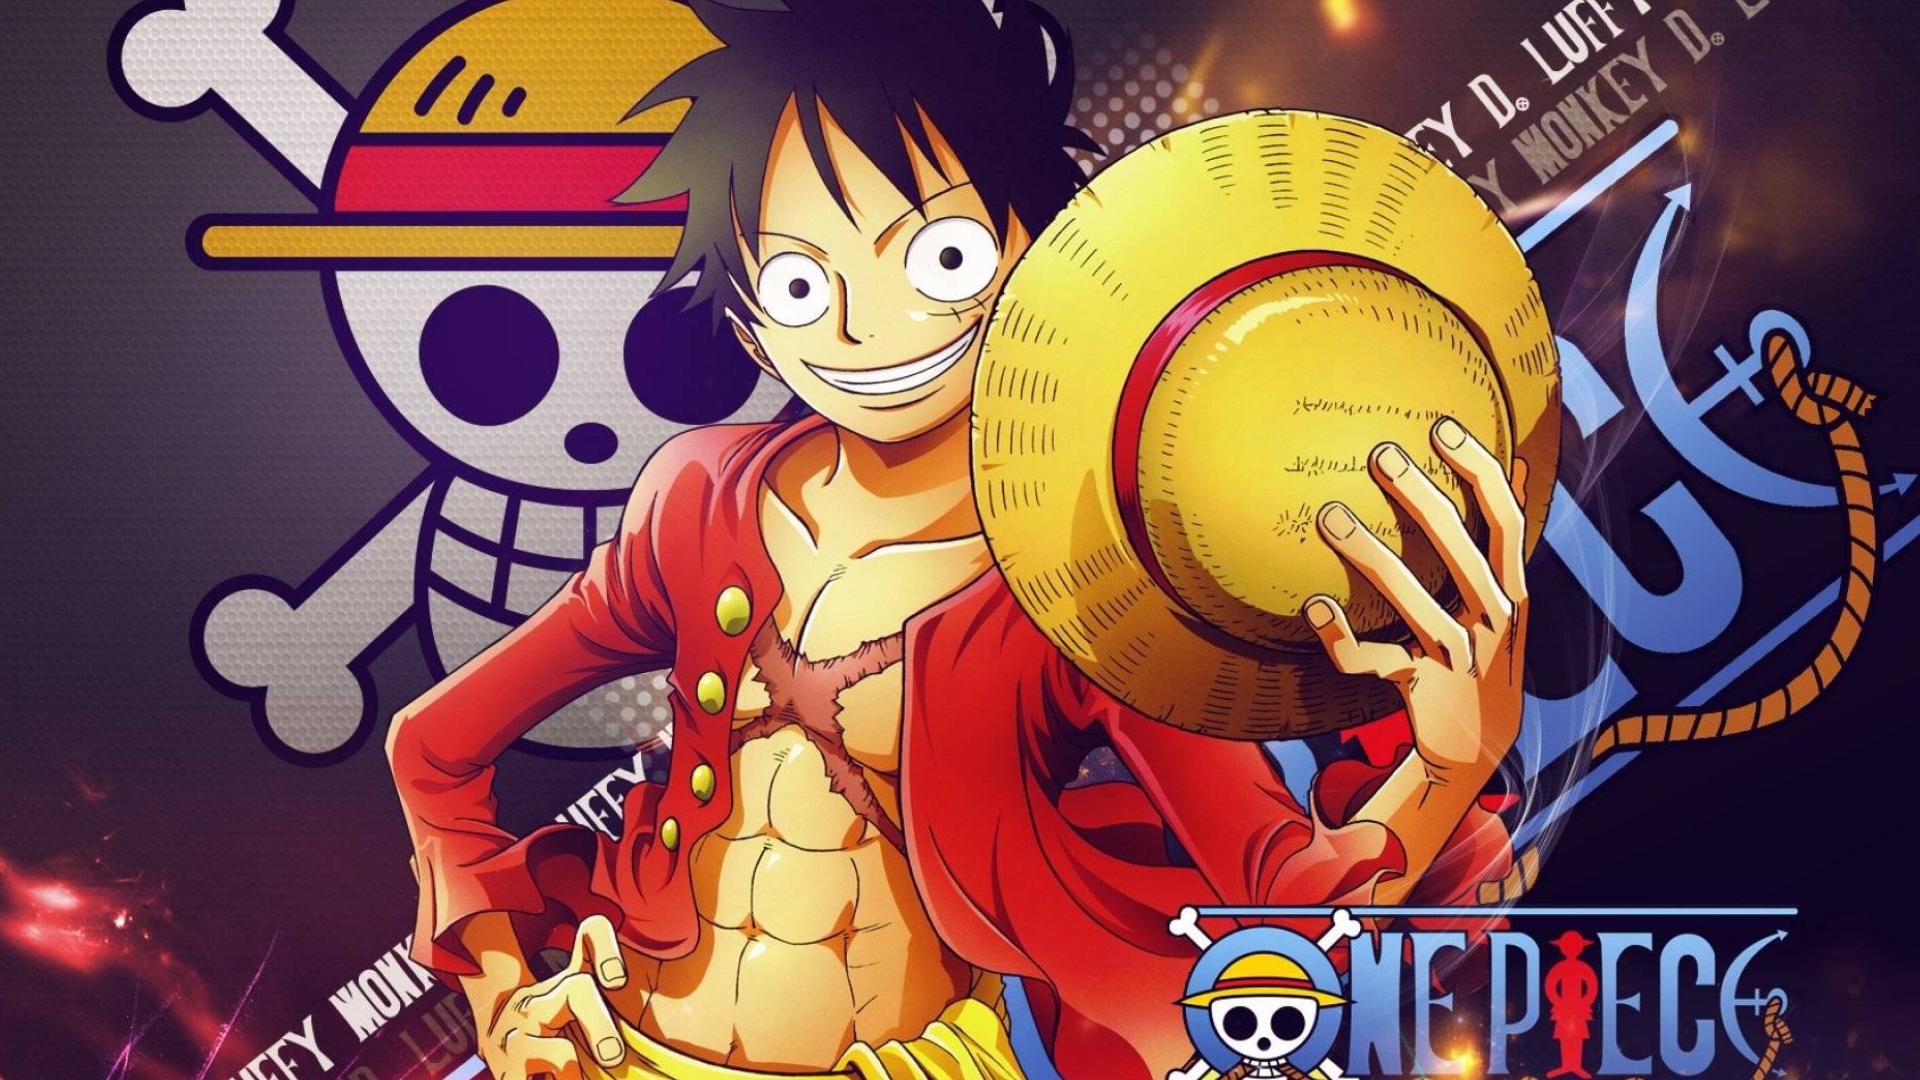 Luffy - Vua hải tặc được yêu thích và ấn tượng với rất nhiều người hâm mộ trong series One Piece. Hãy cùng xem những hình ảnh liên quan để tìm hiểu thêm về nhân vật huyền thoại này và khám phá những điều thú vị về anh hùng của đại dương.